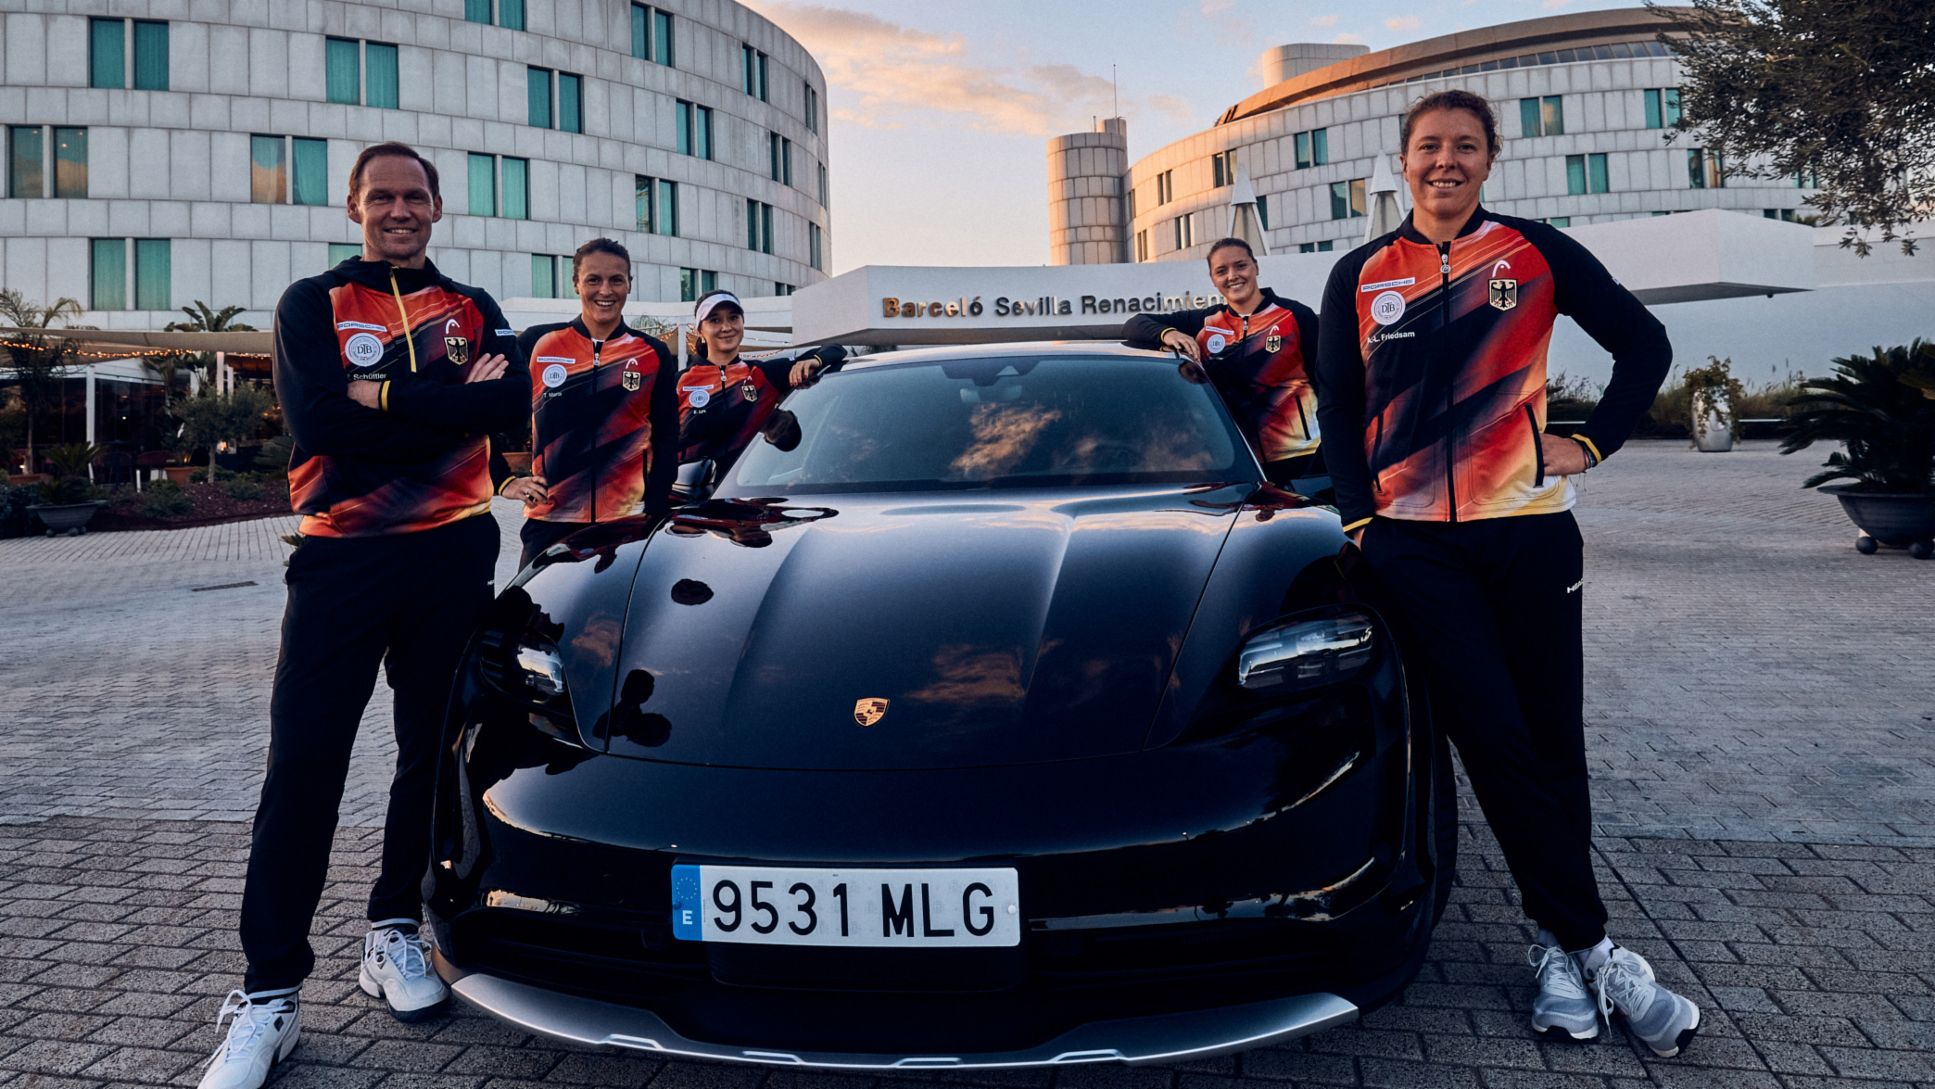 Porsche Team Germany with Rainer Schüttler, Billie Jean King Cup, 2023, Porsche AG